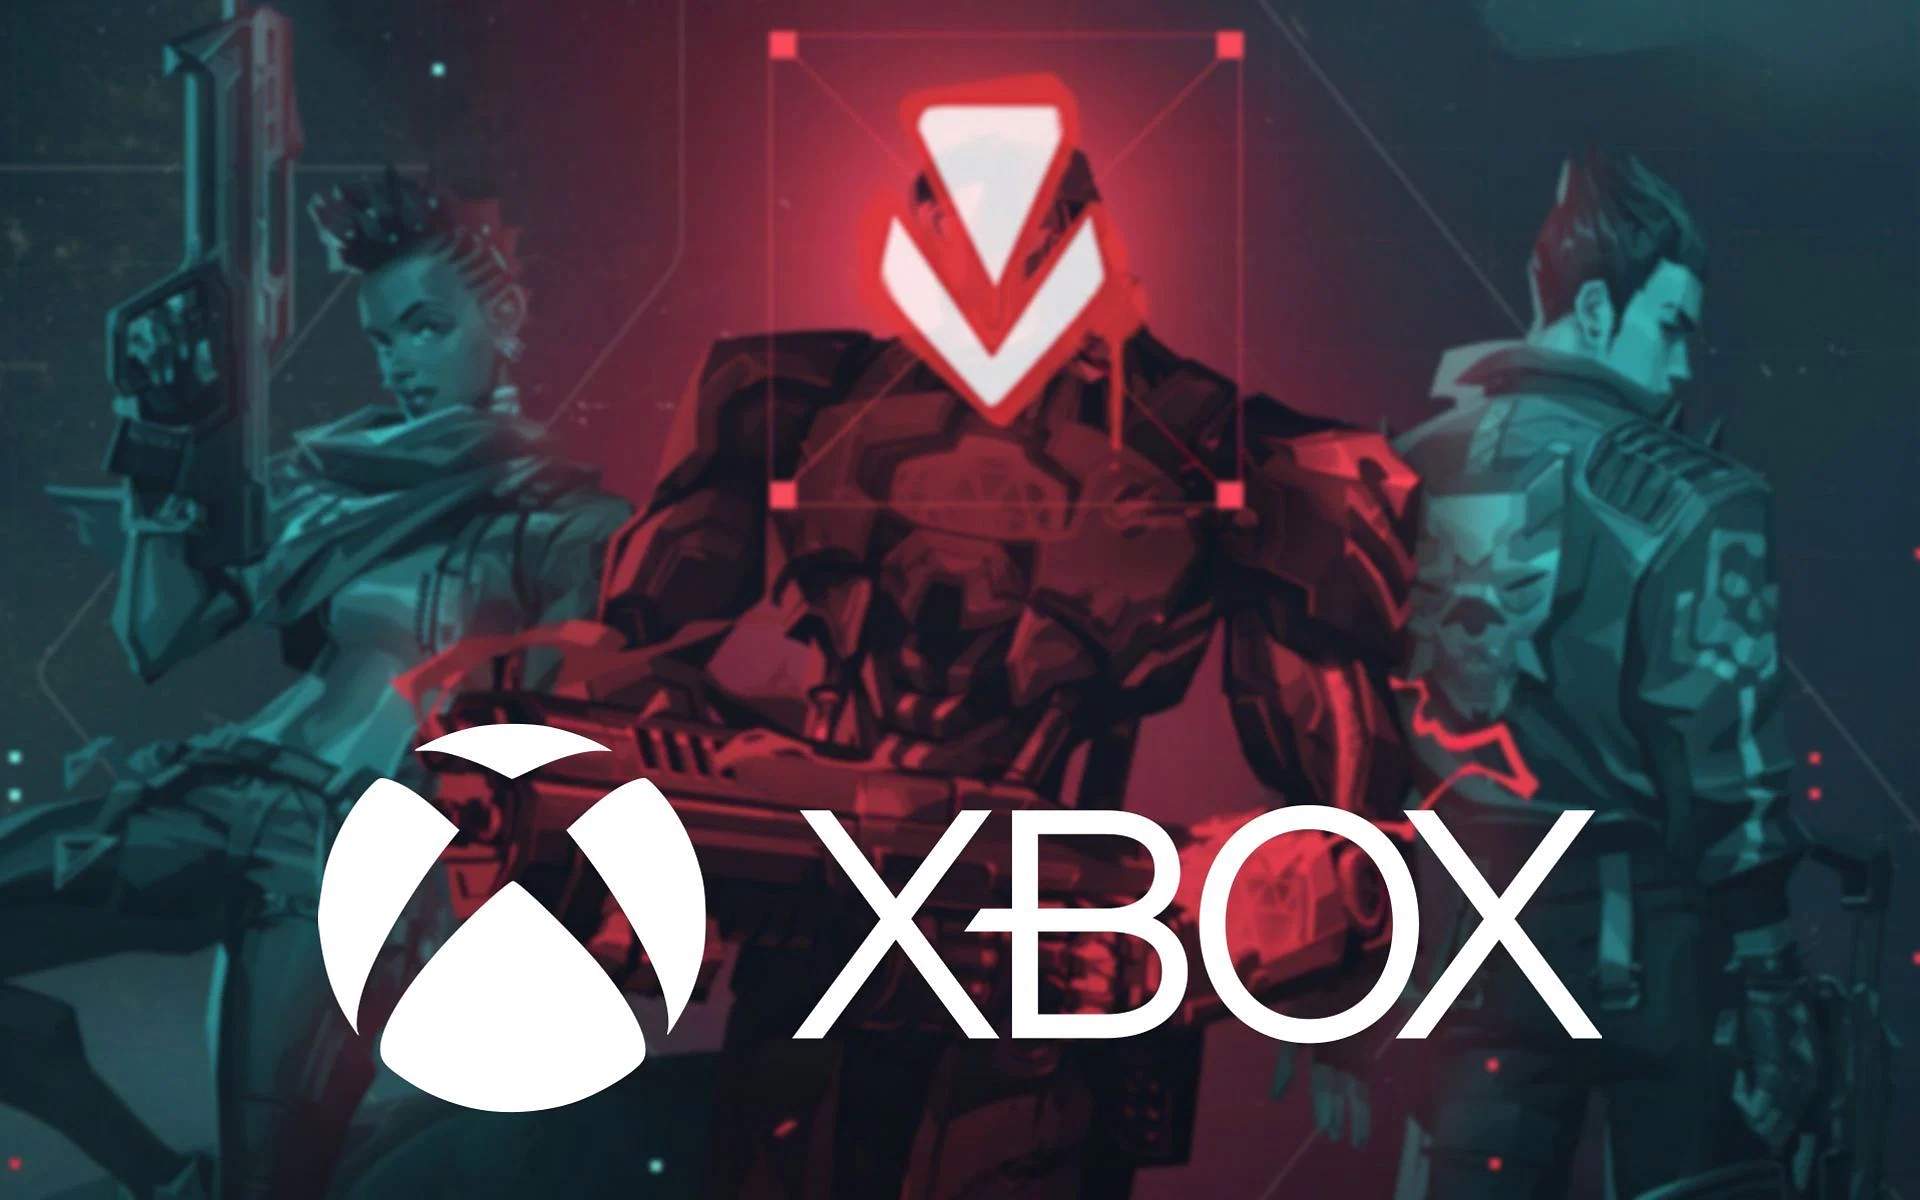 In diesem Artikel werden wir über die Zusammenarbeit mit Riot Games im Xbox Game Pass sprechen und Fragen wie League of Legends auf Xbox beantworten.